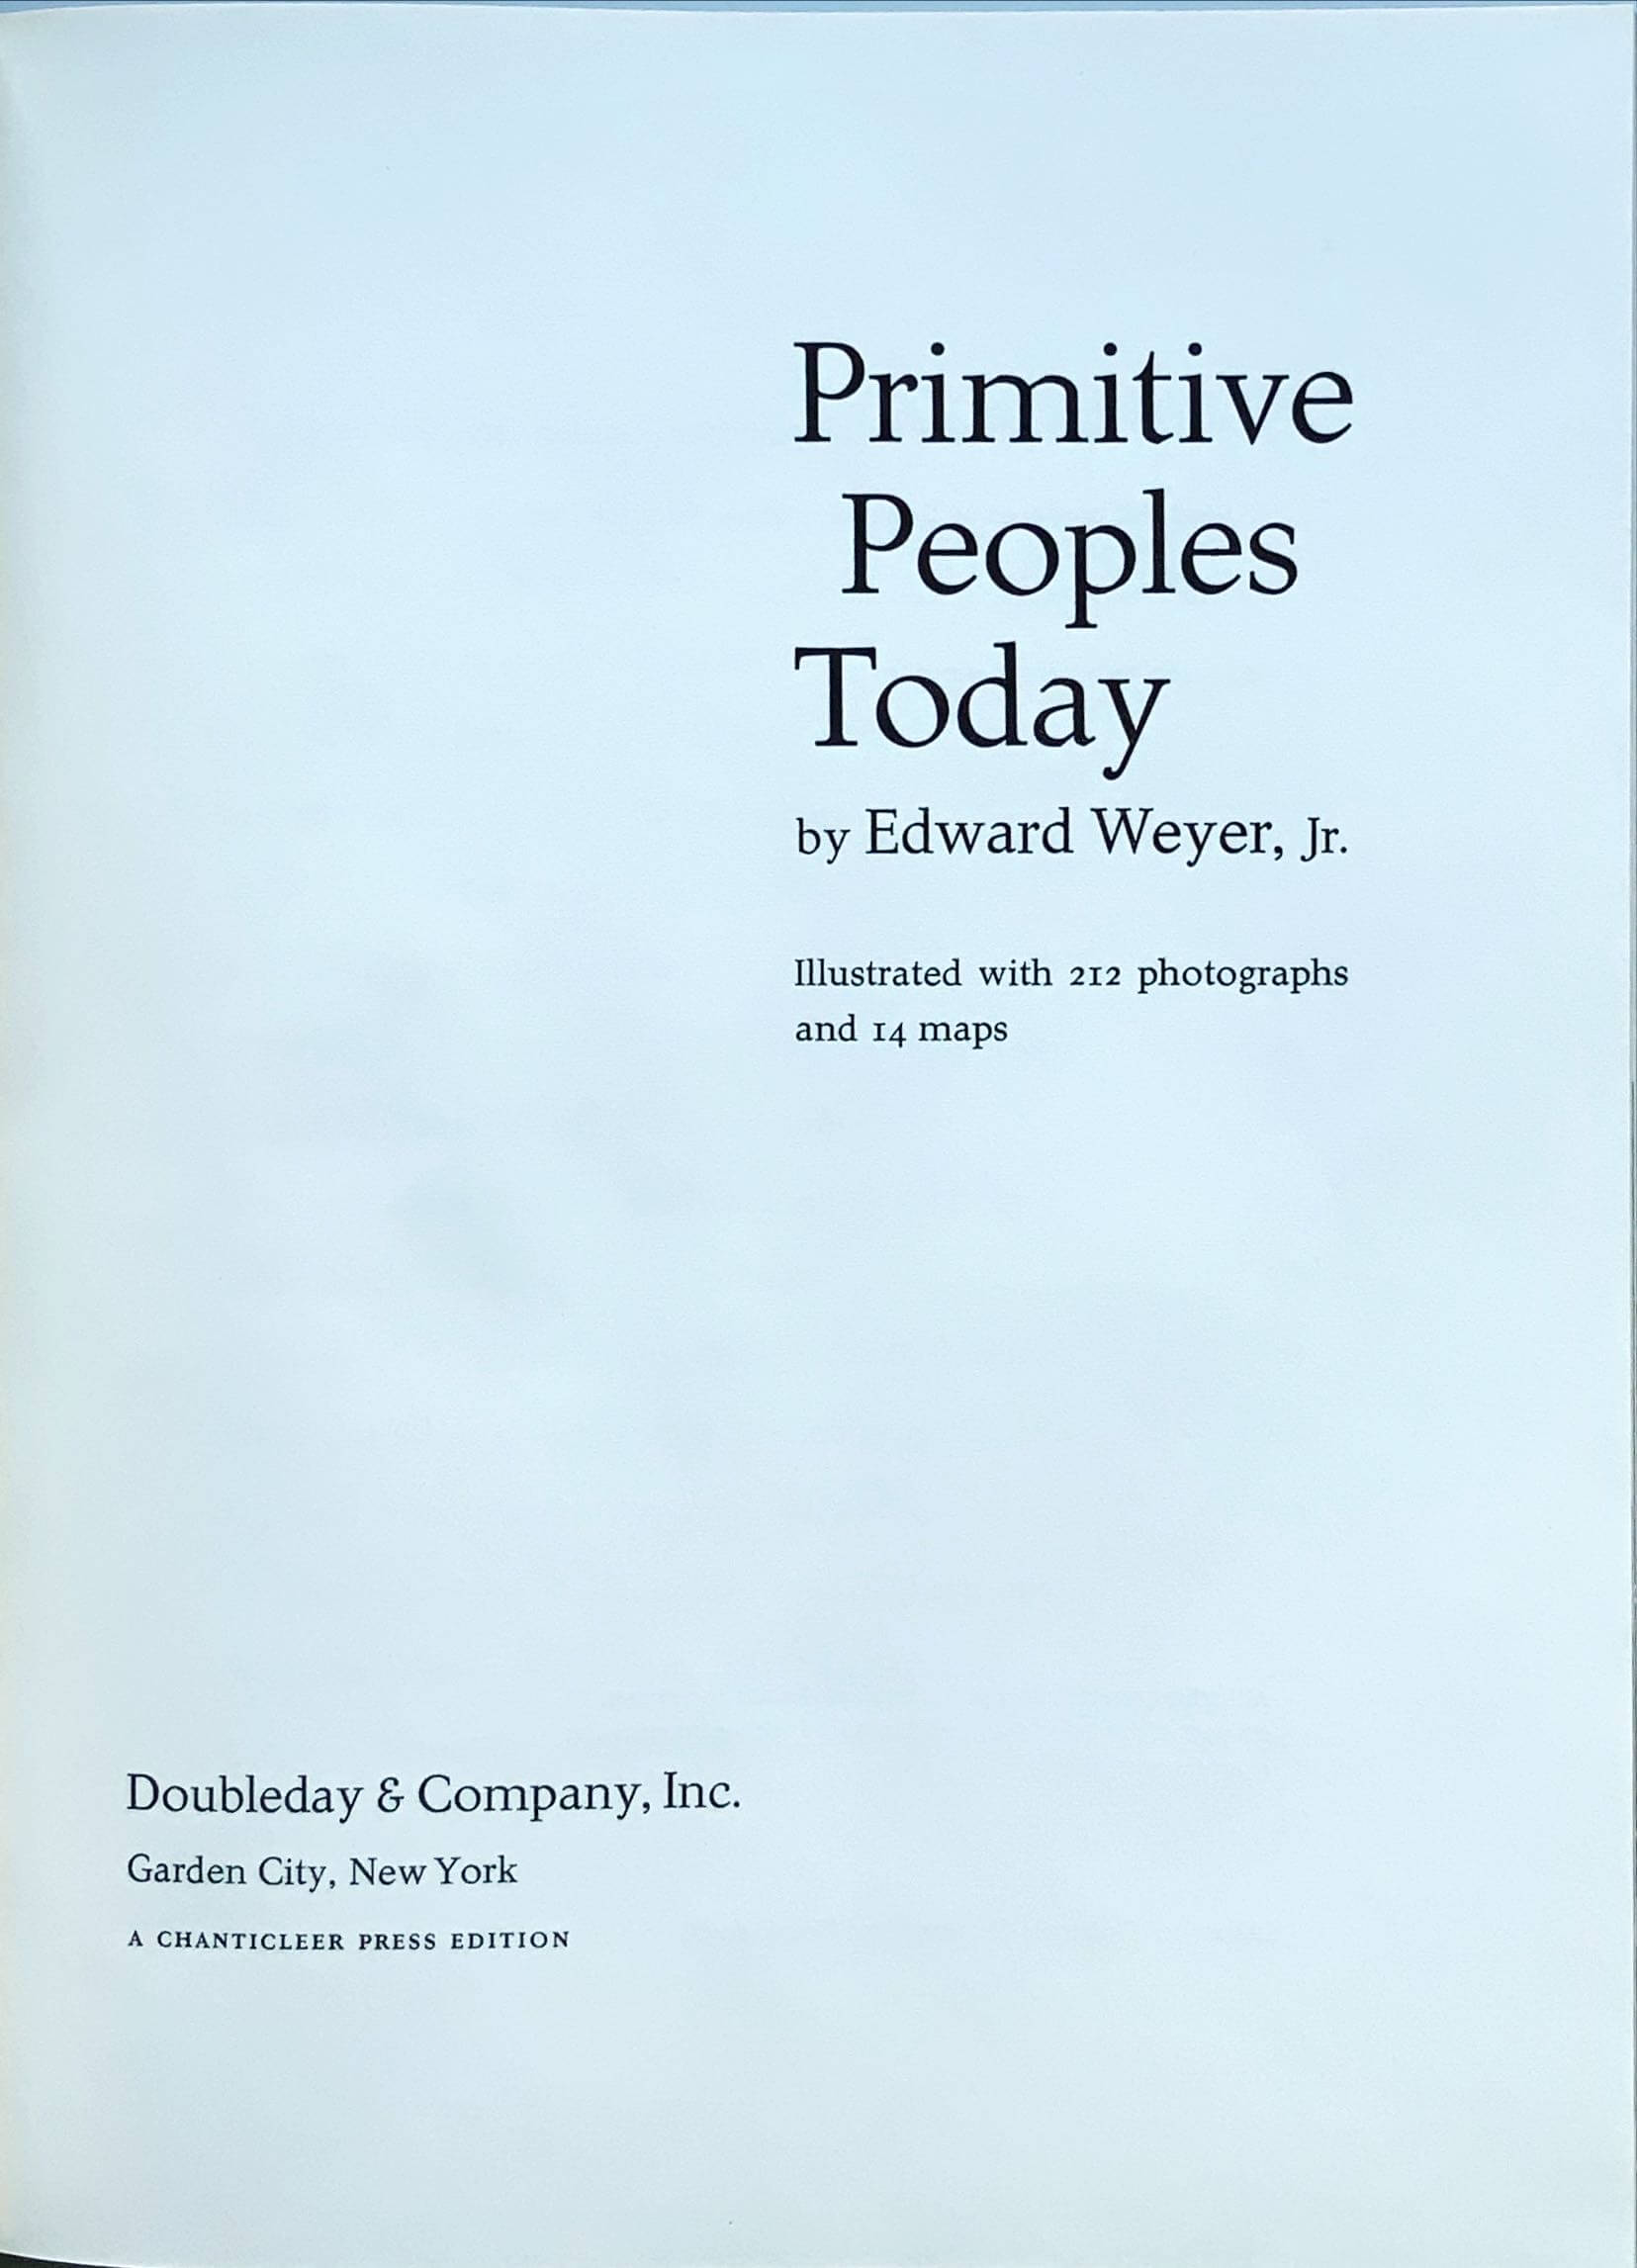 Conzett & Huber: Primitive Peoples Today. 1958